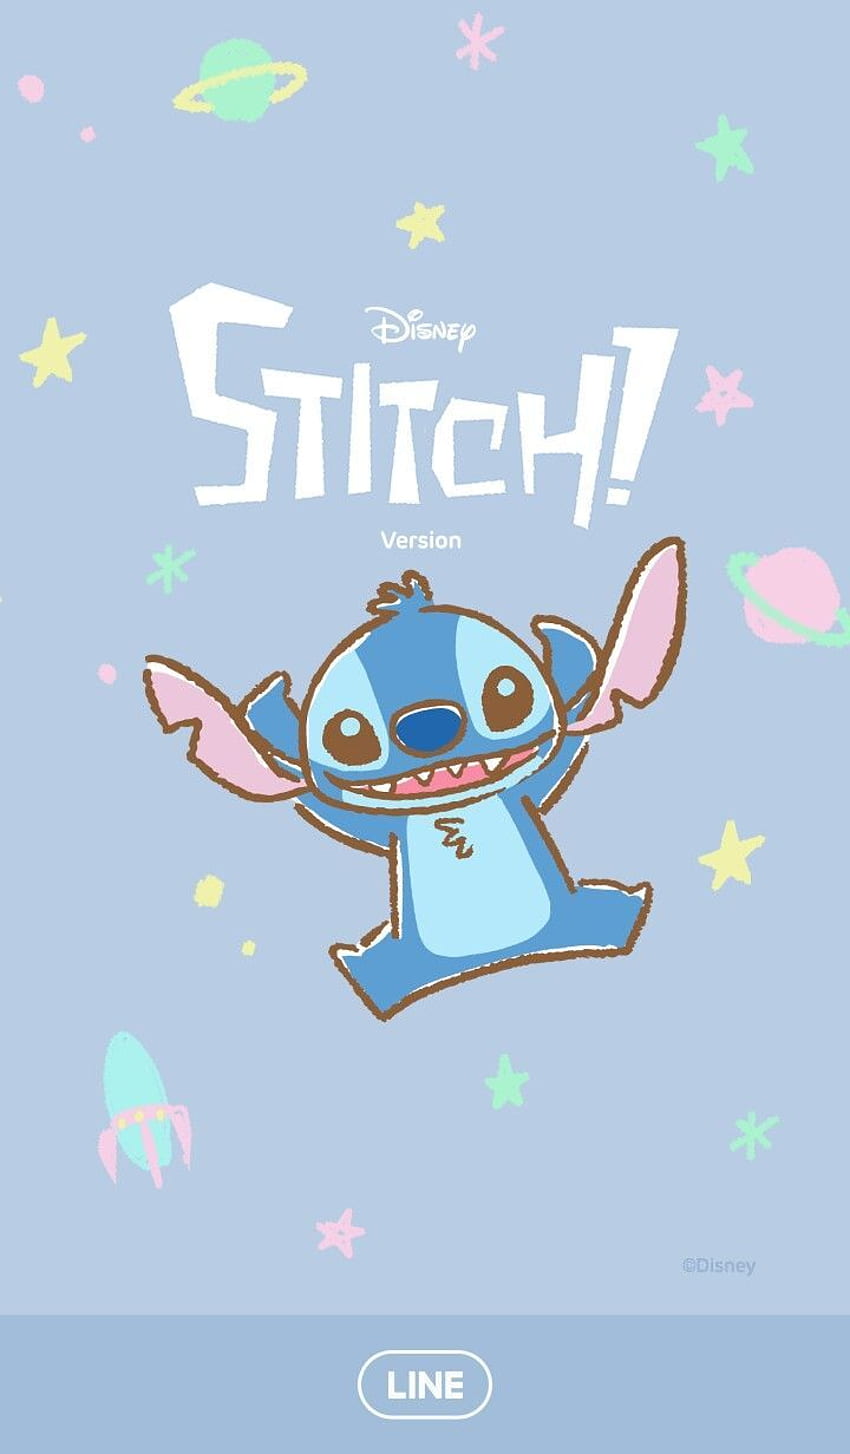 Stitch - Hãy chiêm ngưỡng hình ảnh đáng yêu của Stitch trong bộ sưu tập này. Ai có thể chối từ vẻ ngoài đáng yêu và tinh nghịch của chú chó nhỏ đáng yêu này? Hãy tìm hiểu thêm về Stitch và tai nạn của anh ta trong các tập phim vui nhộn và xúc động.